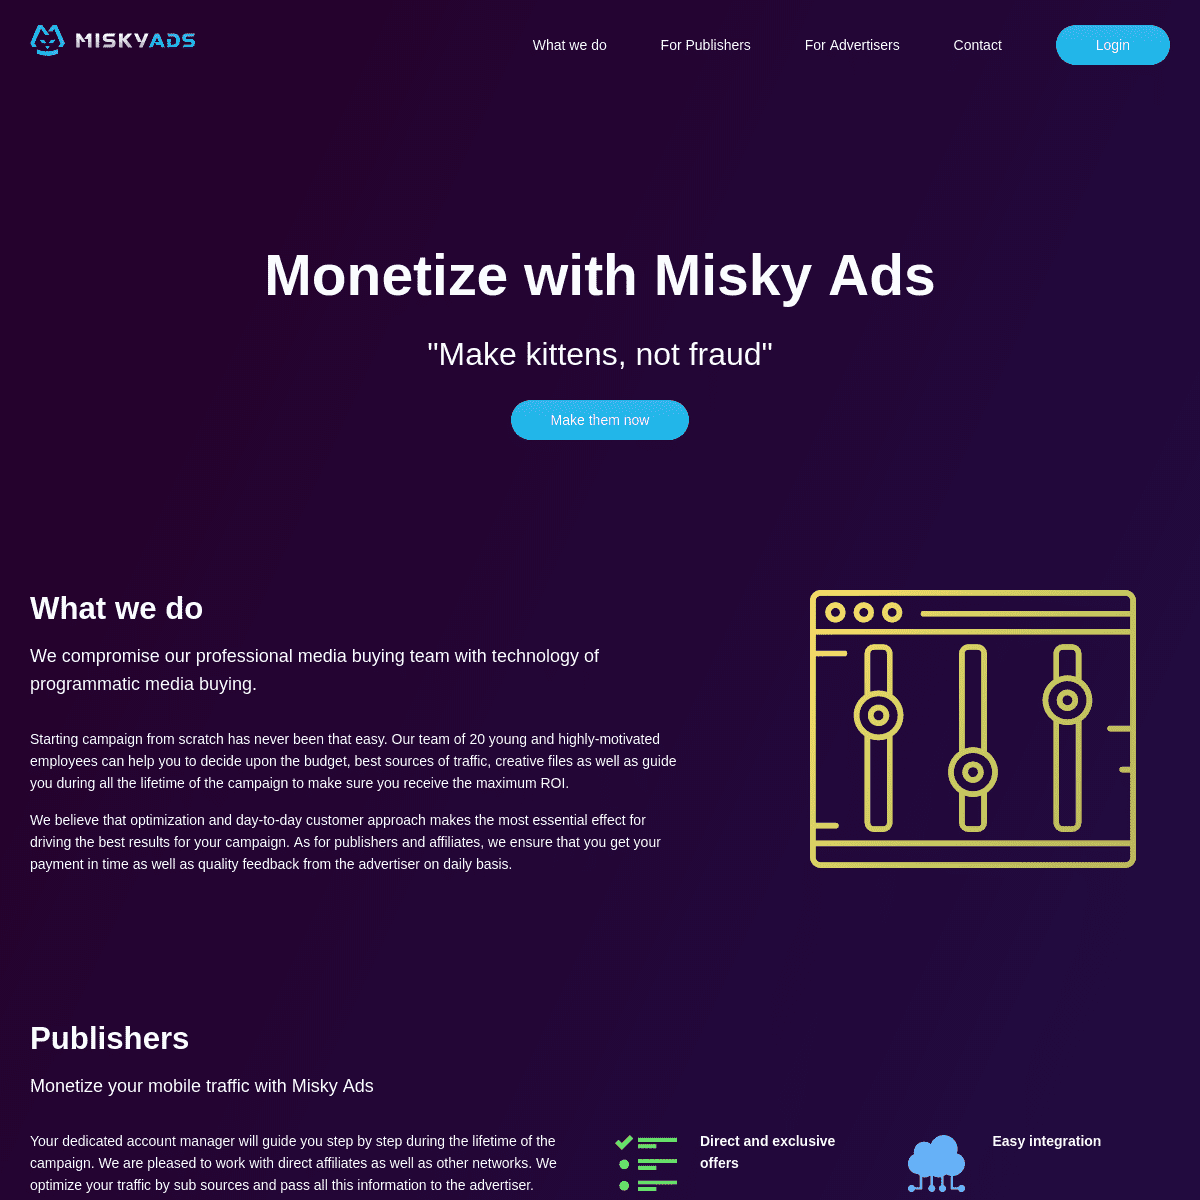 Misky Ads – Make kittens, not fraud